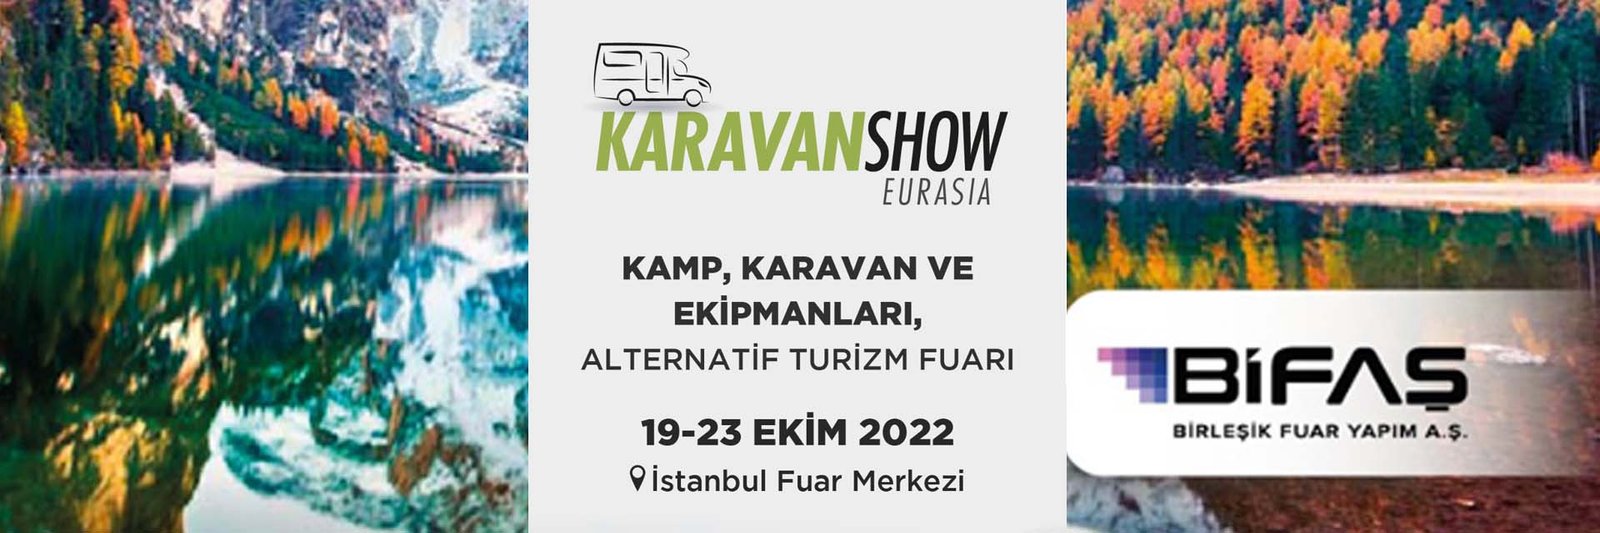 Karavan Show Eurasia 2022 – BİFAŞ – İstanbul Fuar Merkezi